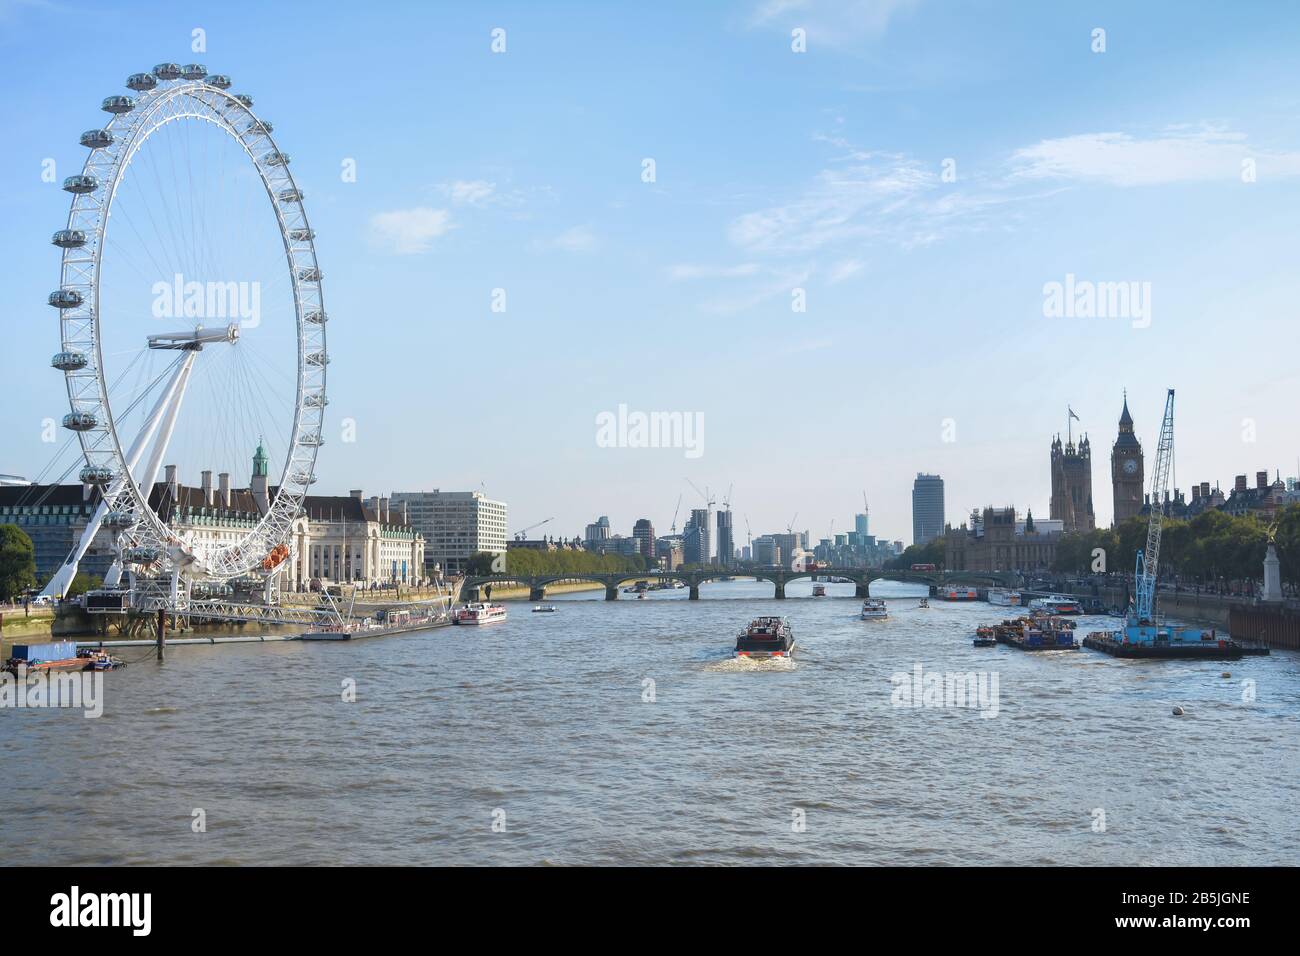 Blick auf Big Ben, Westminster Parliament und London Eye mit Thames River und Touristenschiff Stockfoto